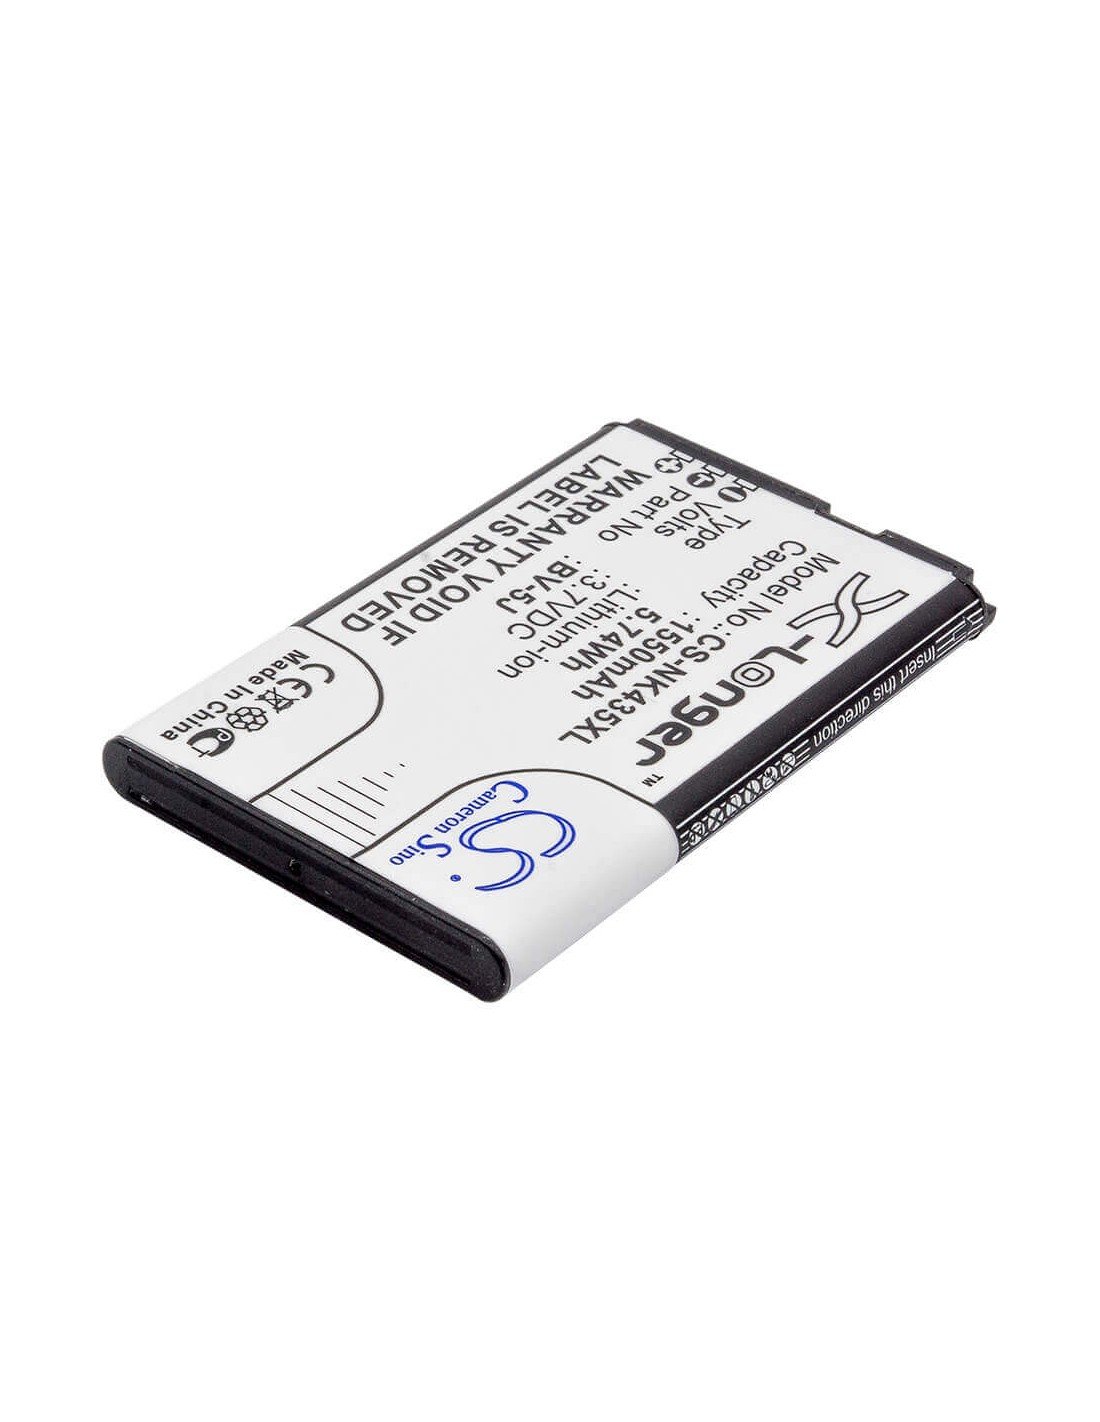 Battery for Nokia Lumia 435, Lumia 532 3.7V, 1550mAh - 5.74Wh